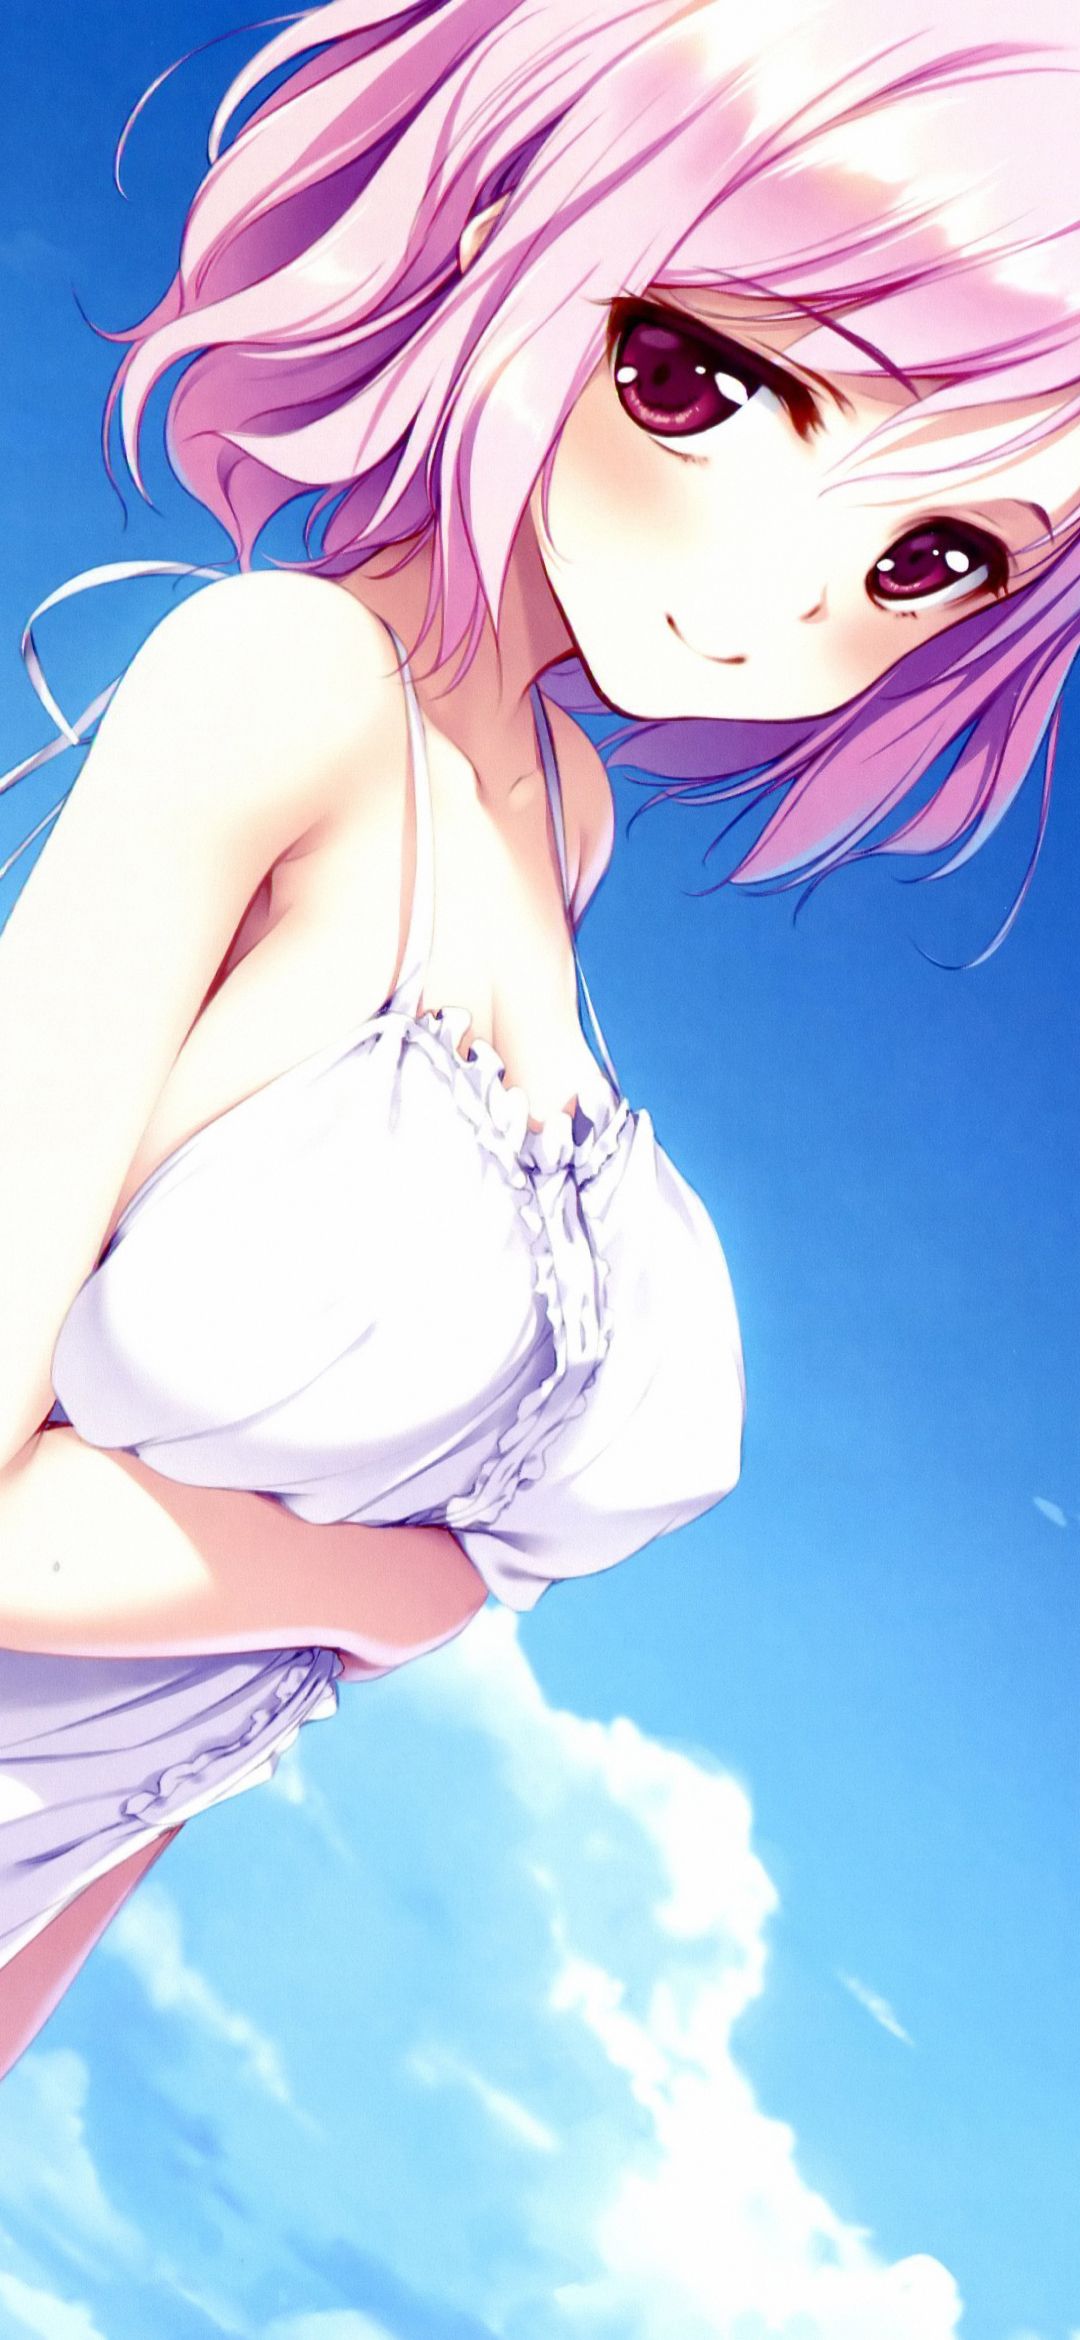 Anime Girl (1080x2340) Wallpaper